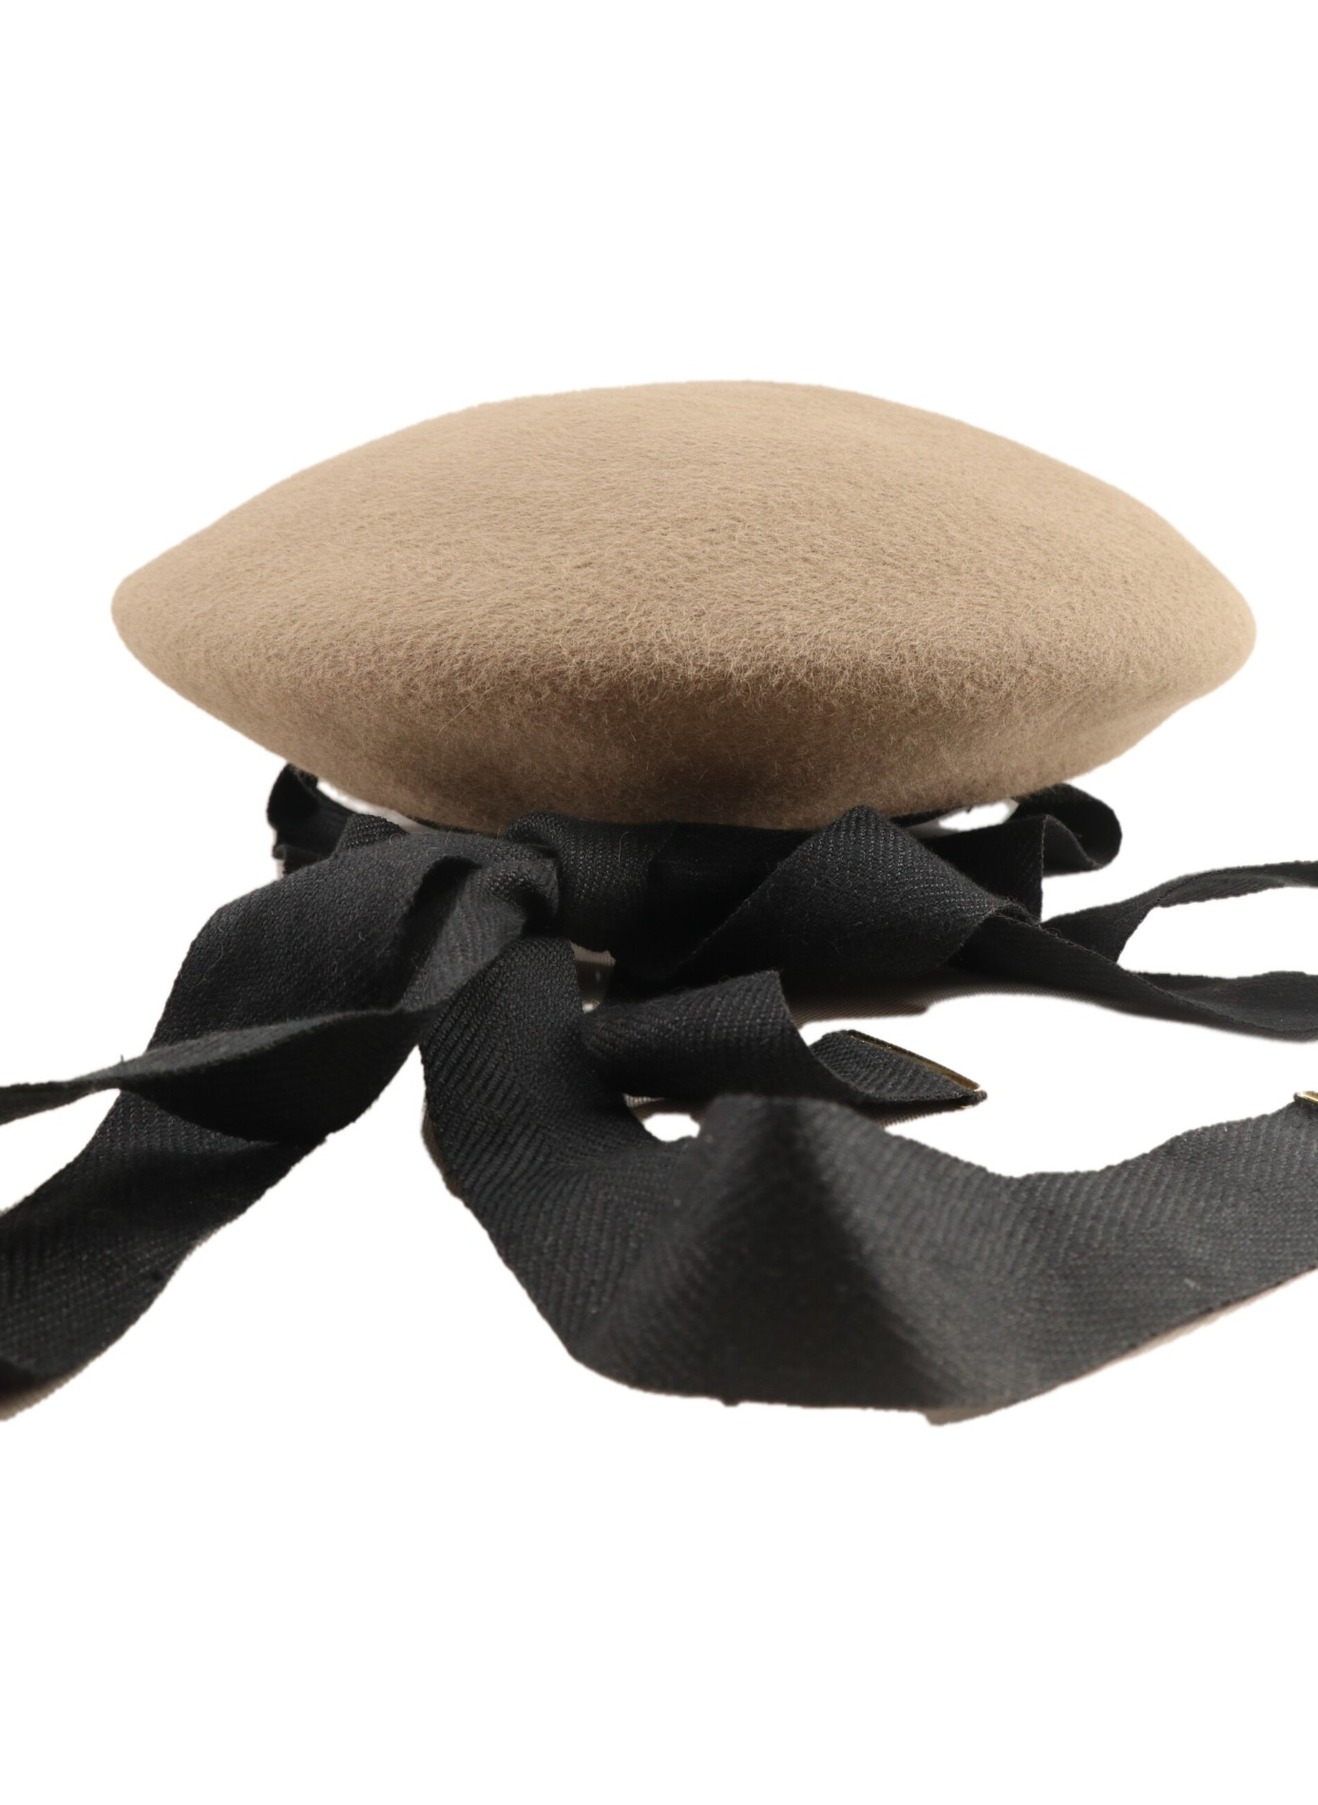 shinonagumo (シノナグモ) Charlotte ベレー帽 ベージュ サイズ:S